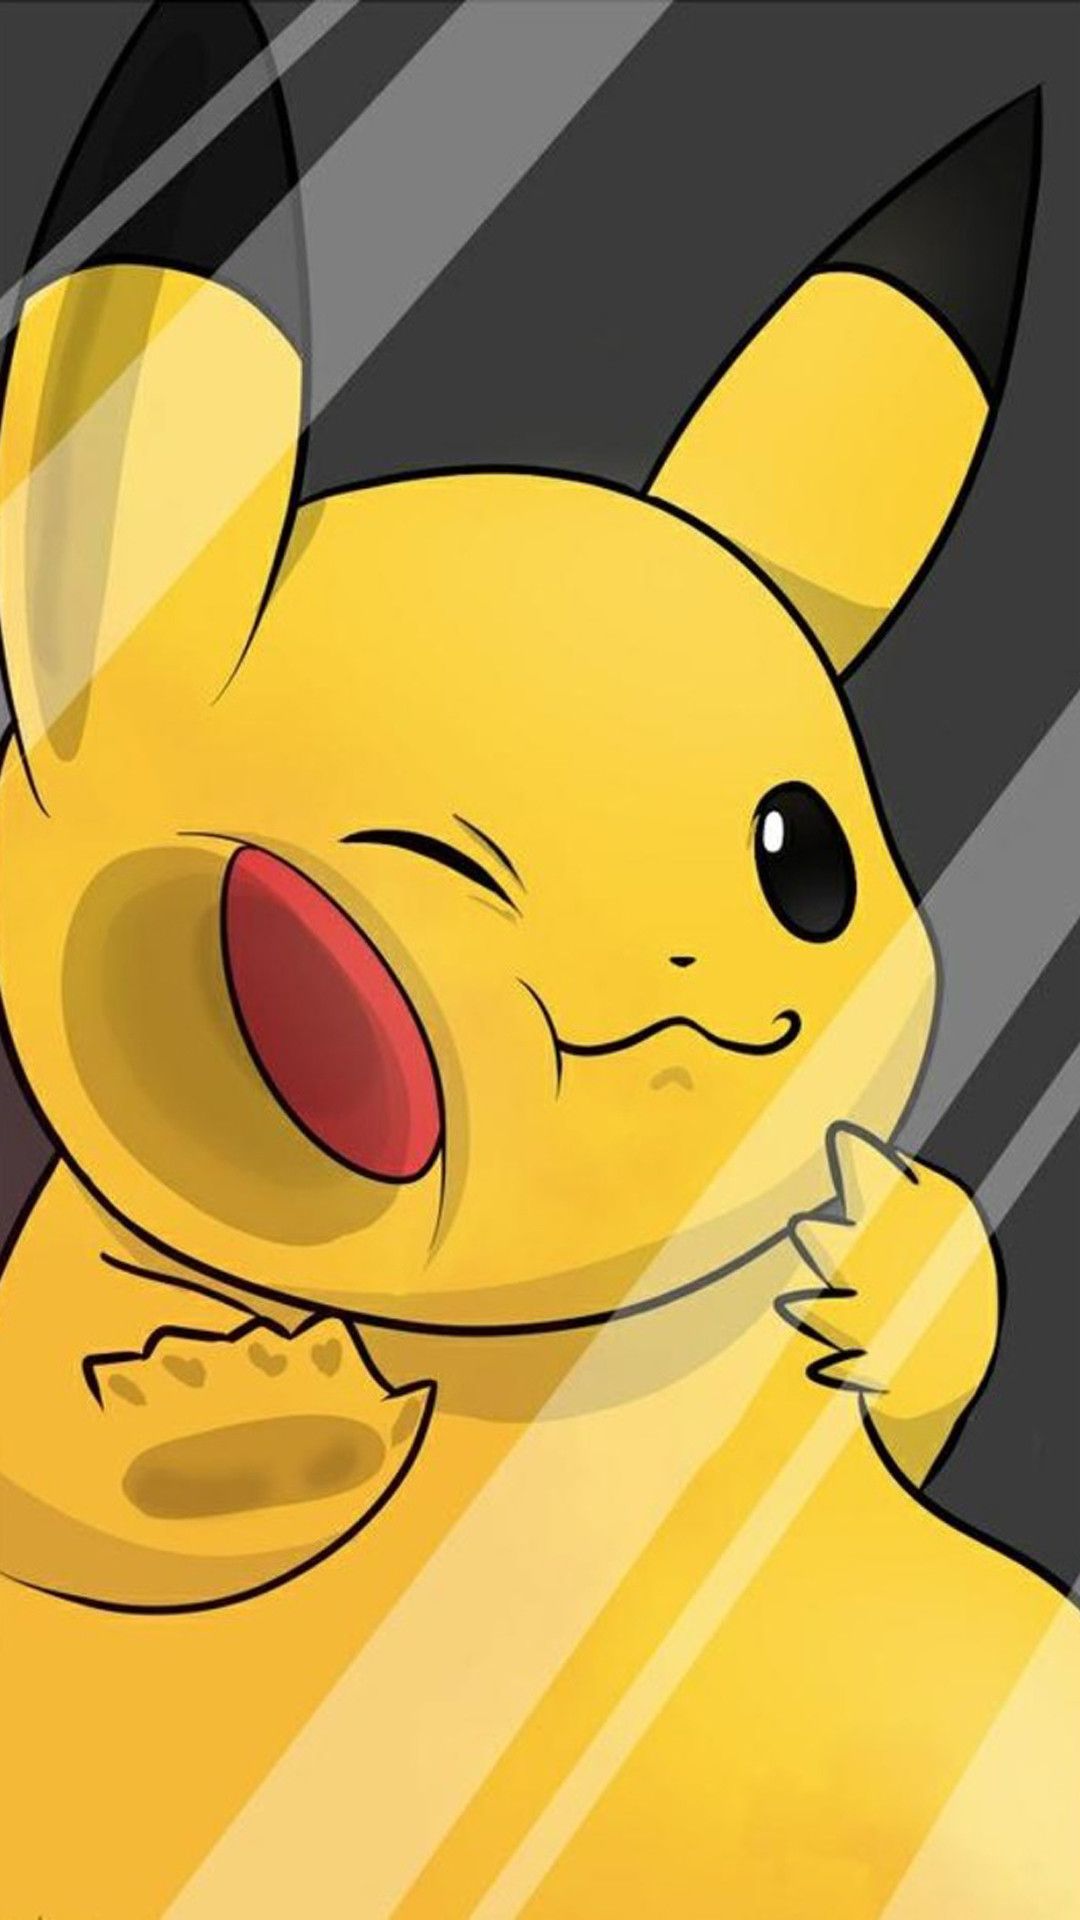 Pikachu iPhone Wallpaper (más de 84 imágenes)